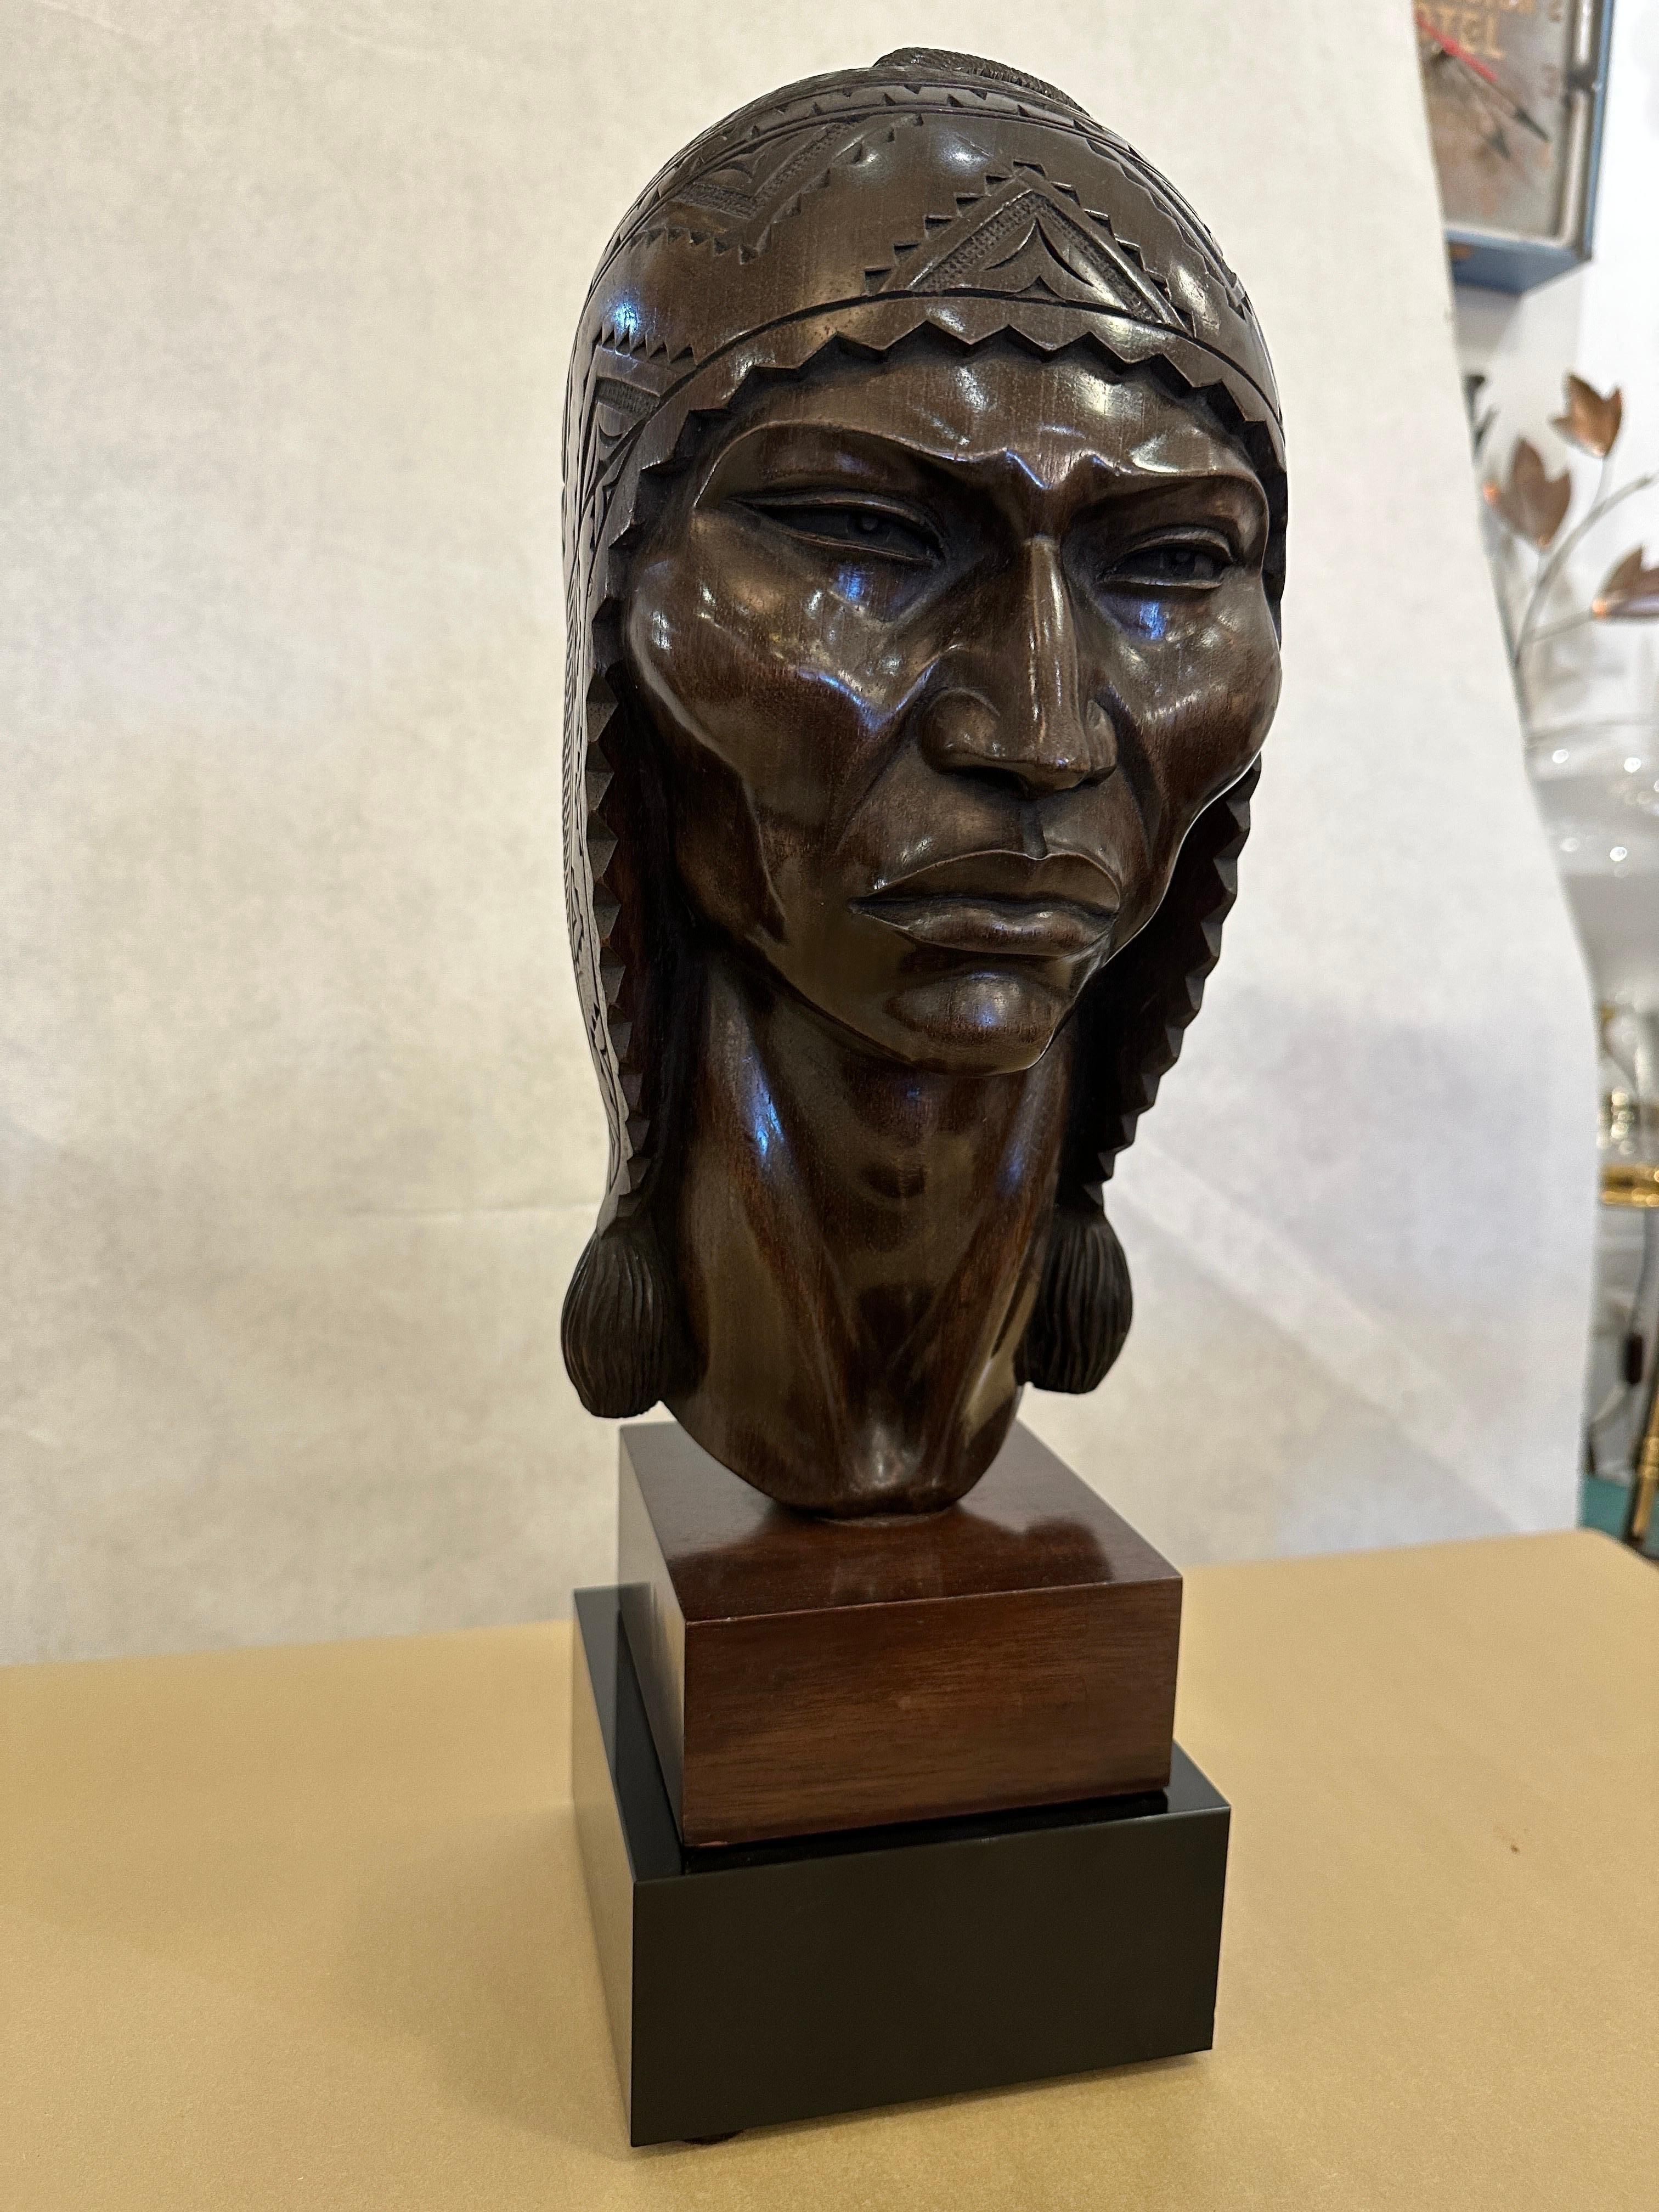 Diese wunderschön und aufwändig geschnitzte Vintage-Büste eines männlichen Inka-Kriegers von SARAVIA. Dieses wunderbare dunkle Holz sitzt auf einem speziell angefertigten Sockel aus schwarzem Glas (nicht angebracht). Die Gesichtszüge, das Haar und